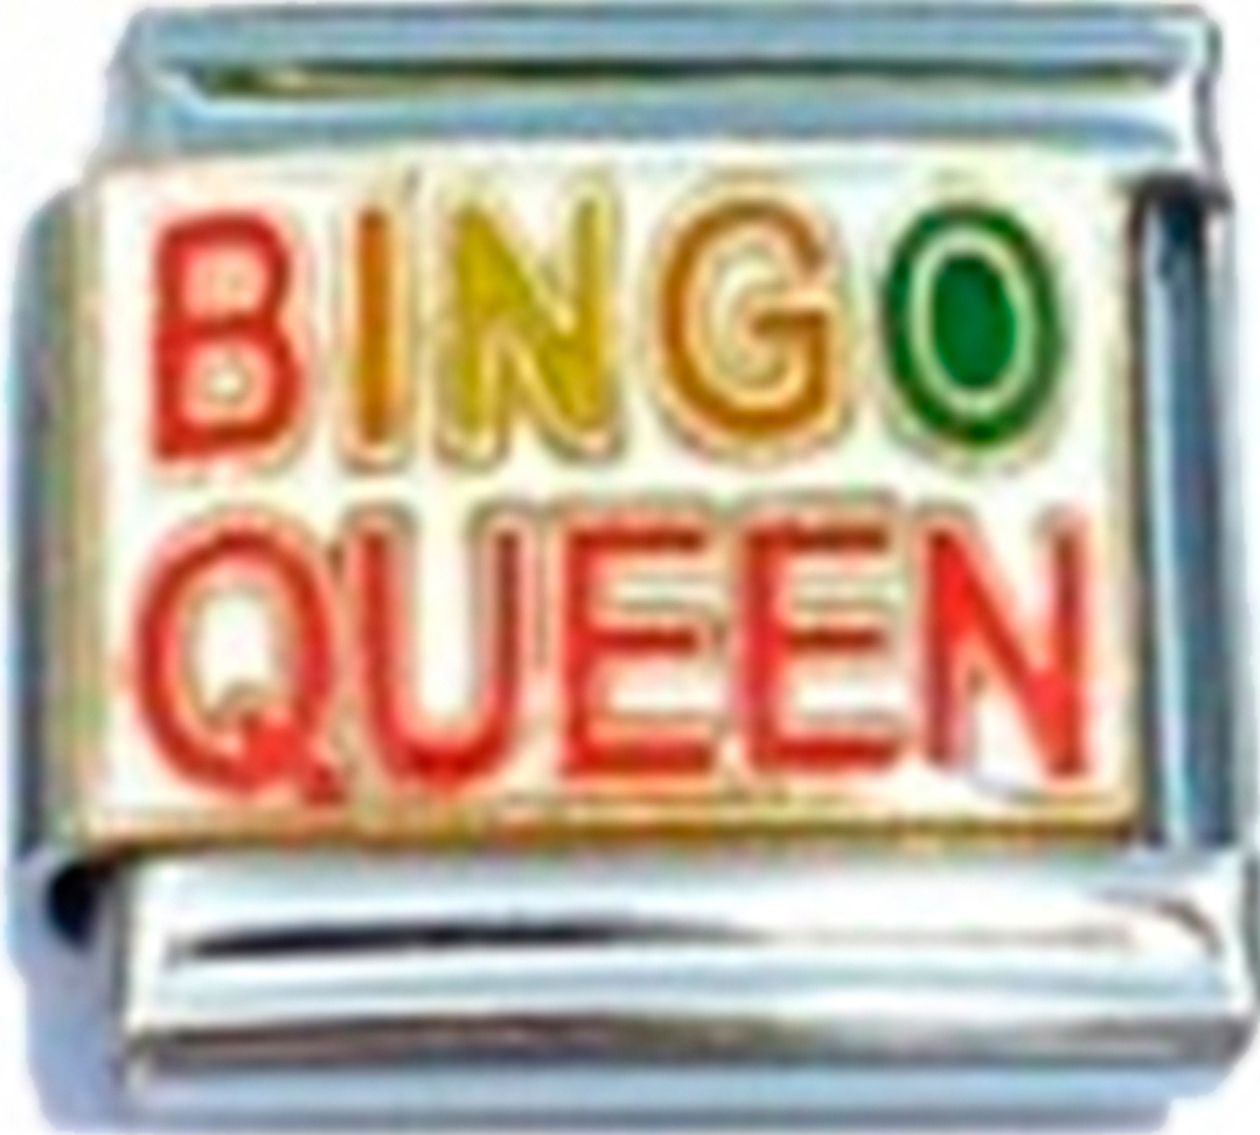 NC242-Bingo-Queen